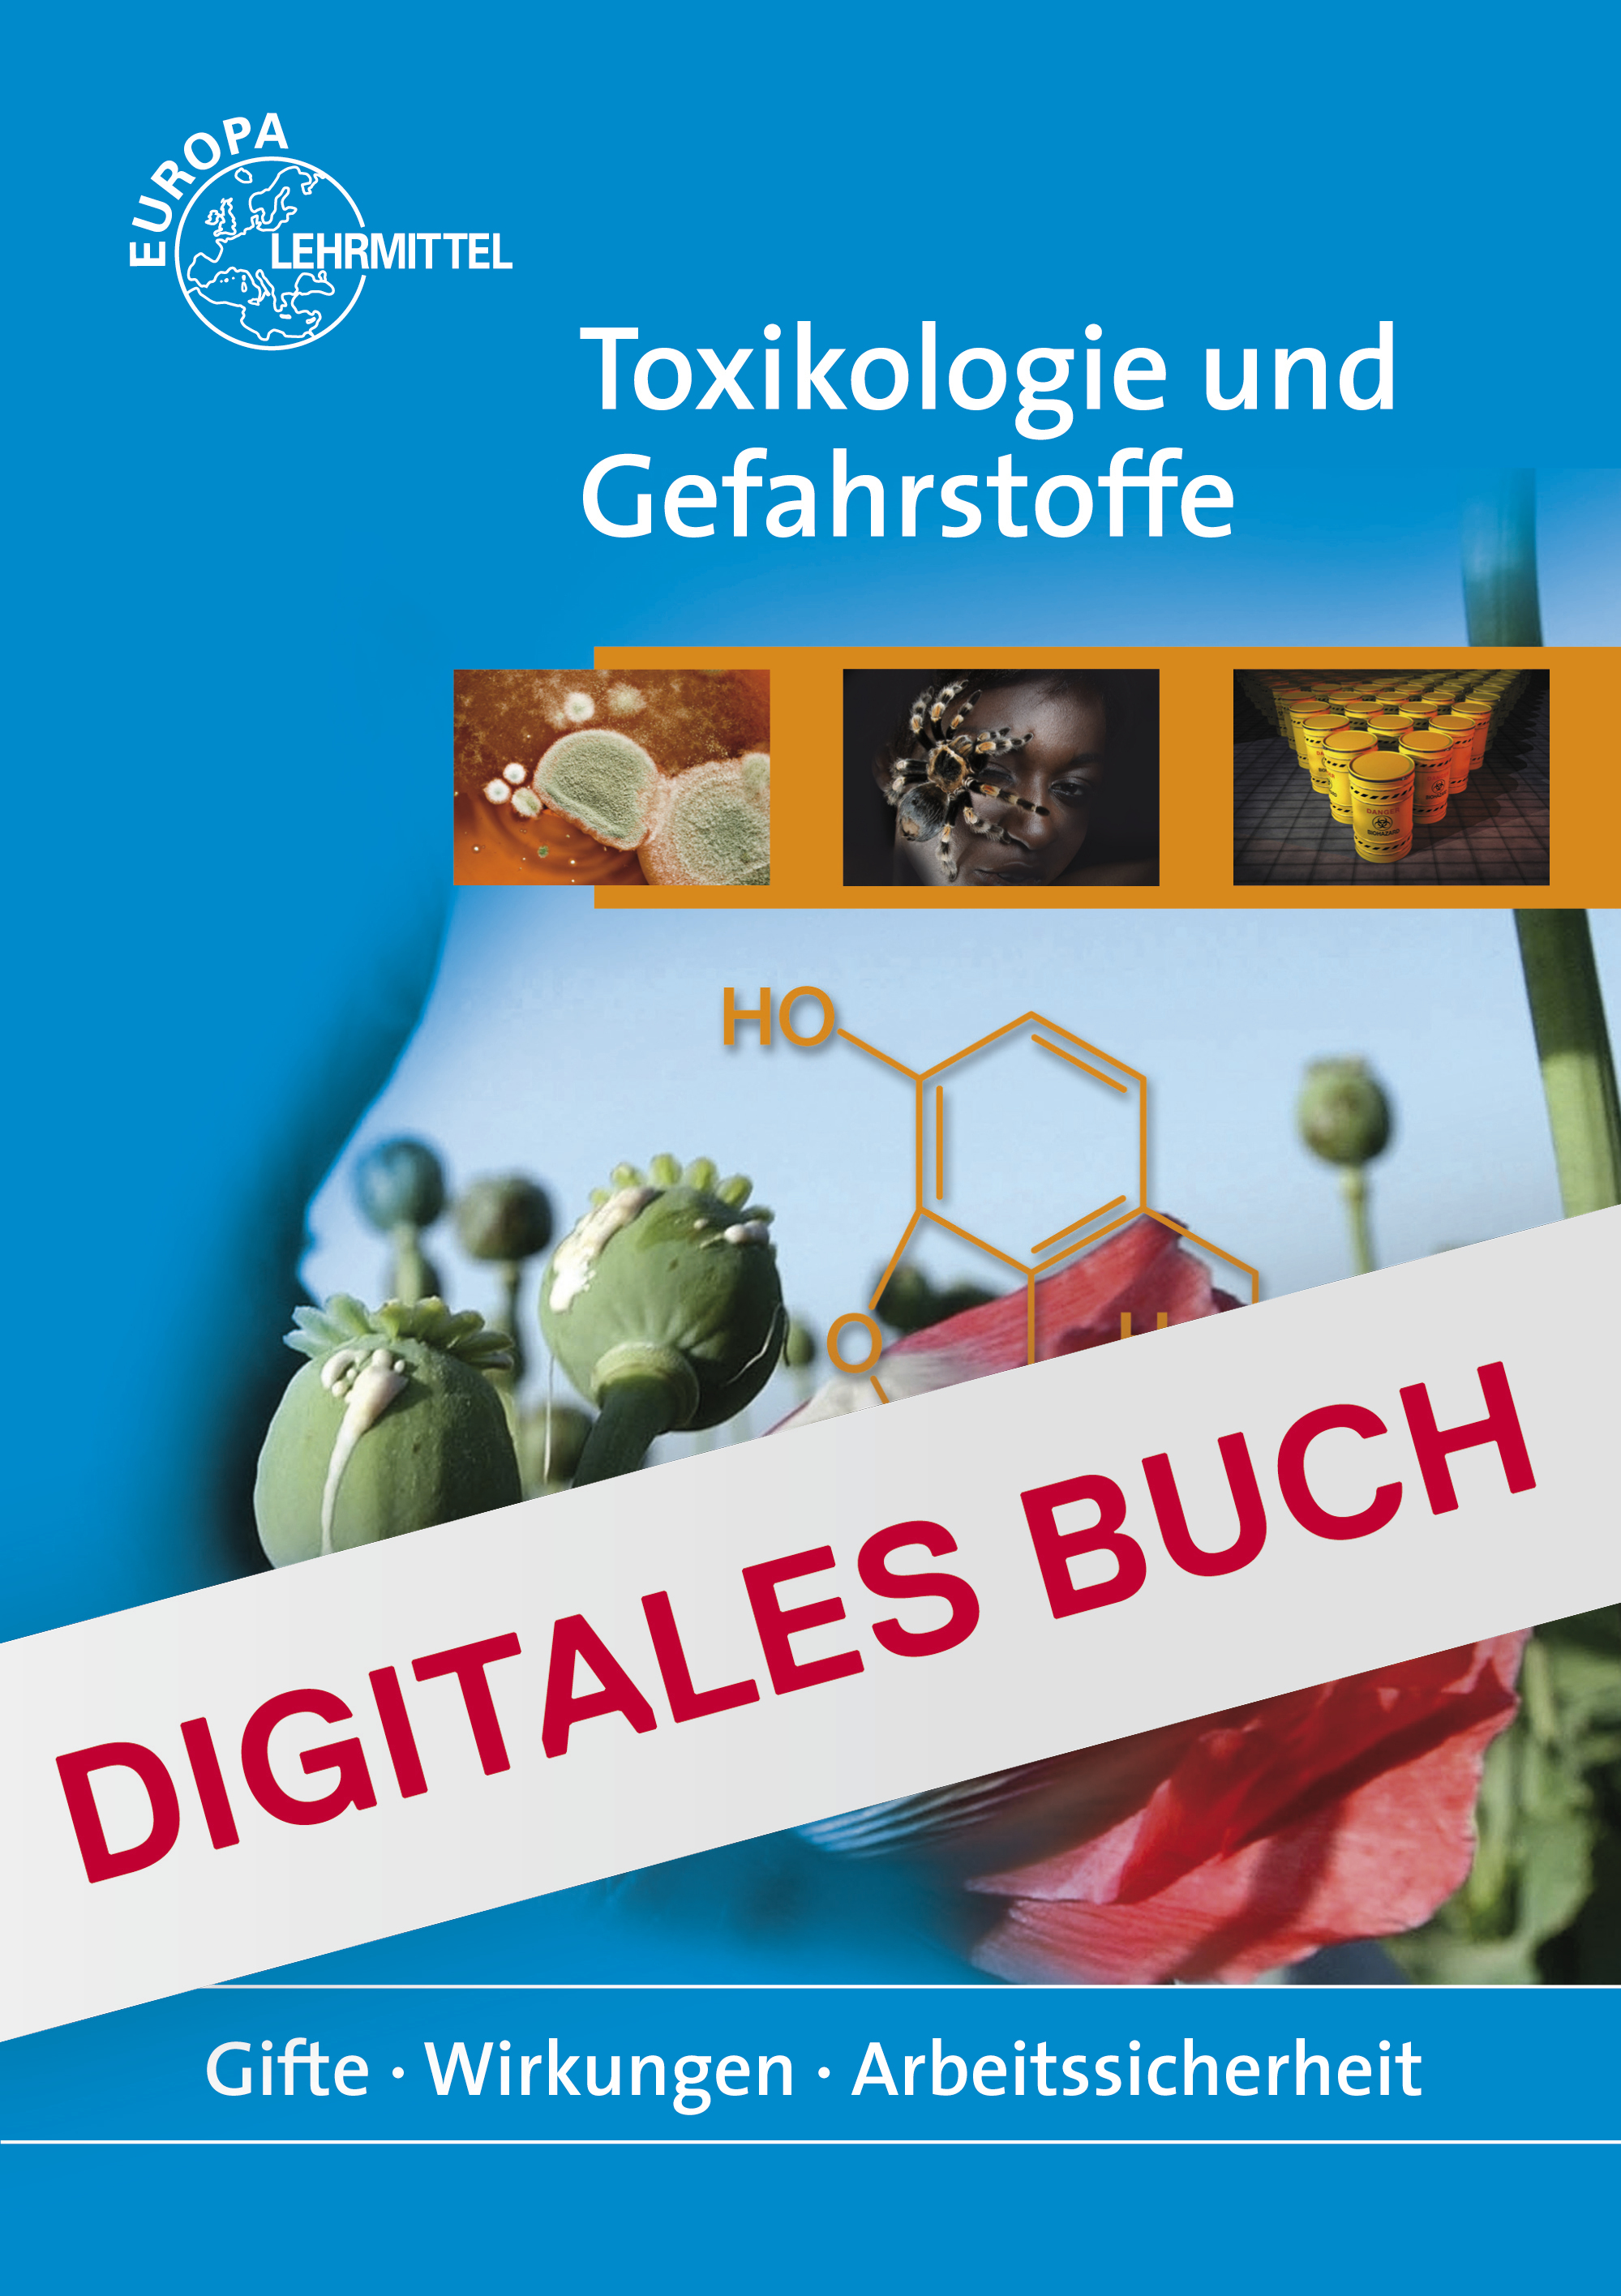 Toxikologie und Gefahrstoffe - Digitales Buch